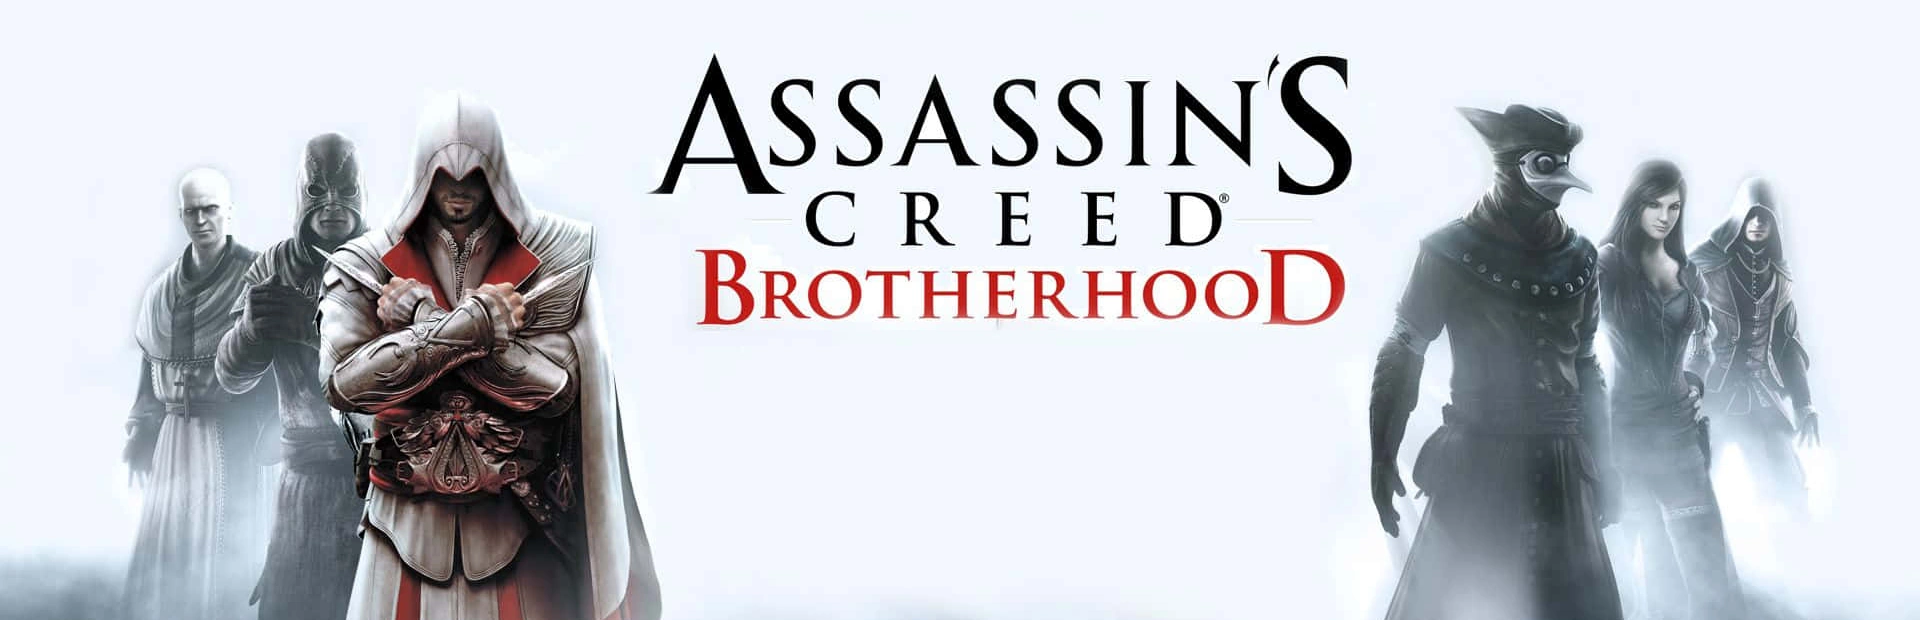 دانلود بازی Assassin's Creed Brotherhood برای PC | گیمباتو